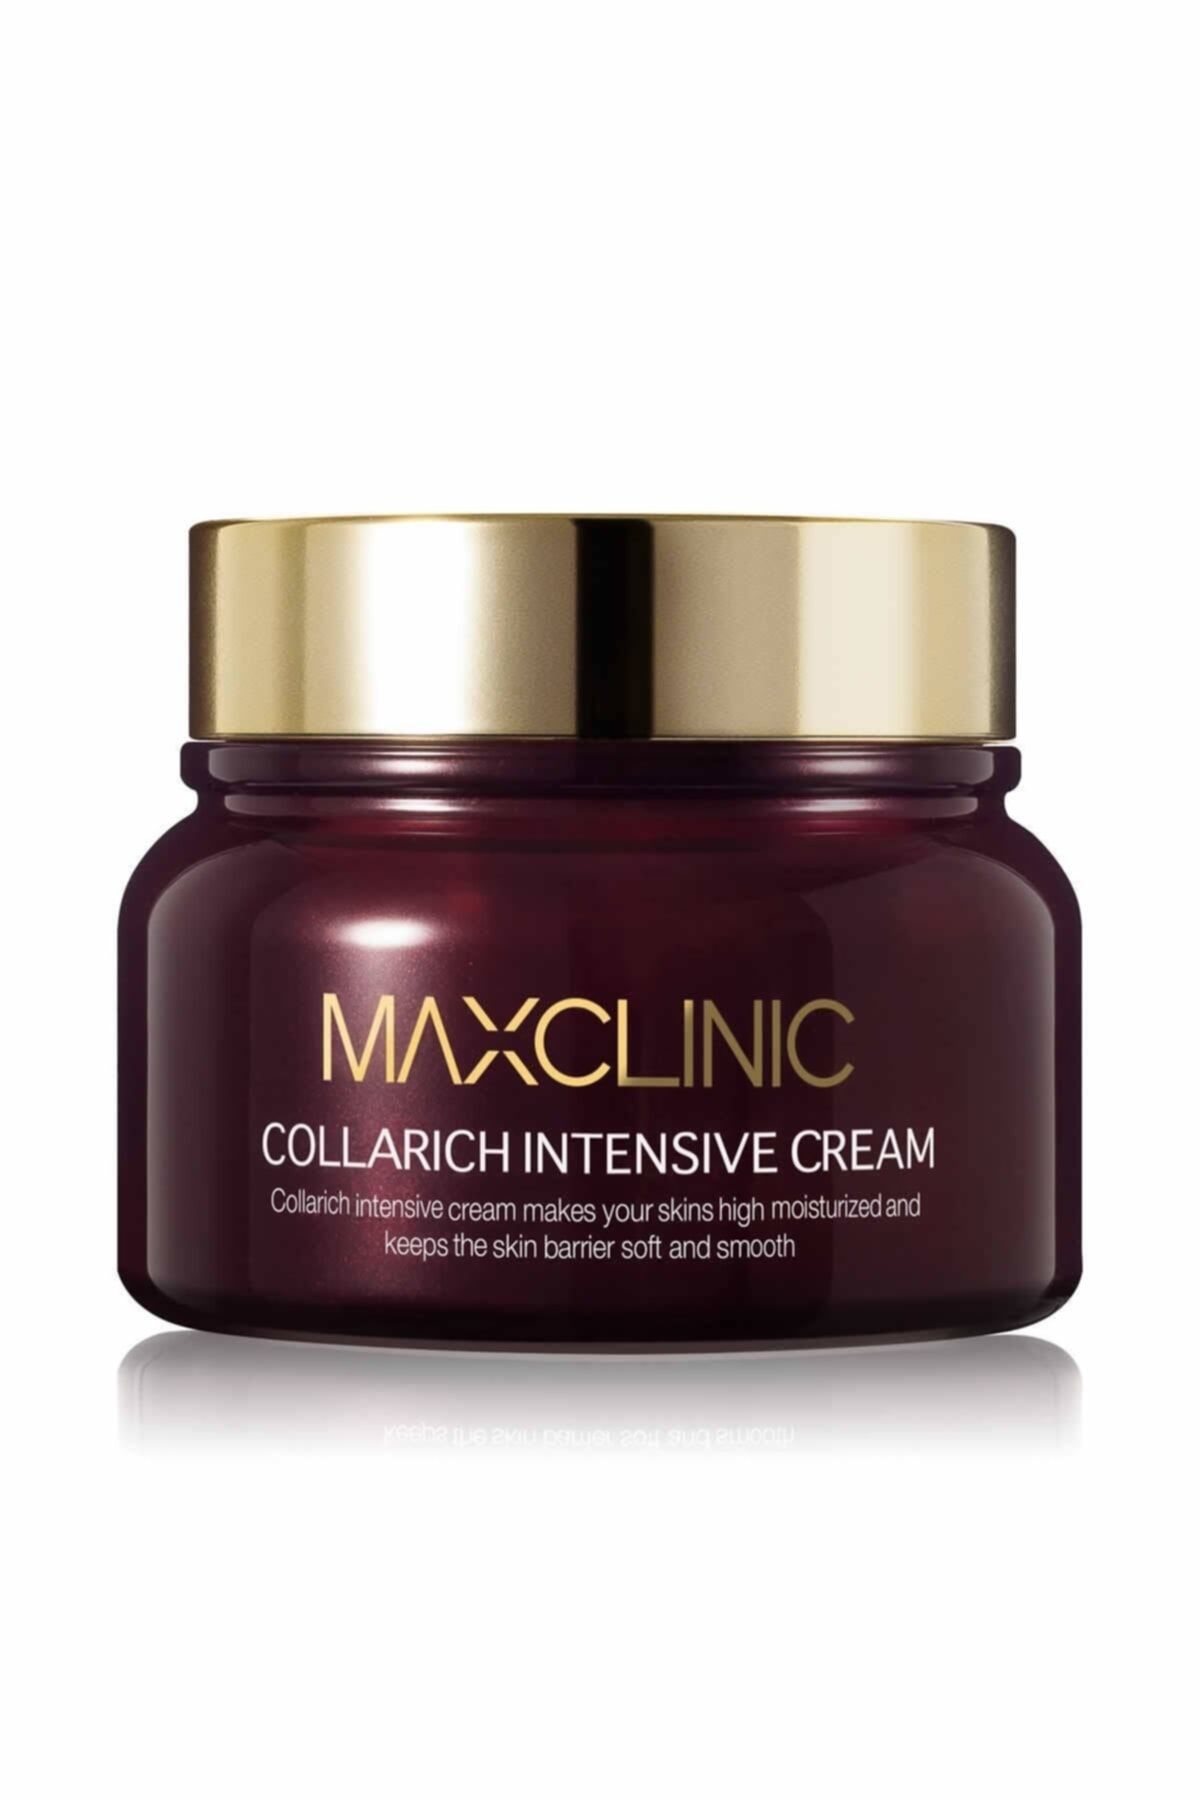 MAXCLINIC Kolajen Kompleksi Ile Yaşlanma Karşıtı Zengin Içerik Bakım Kremi Collarich Intensive Cream